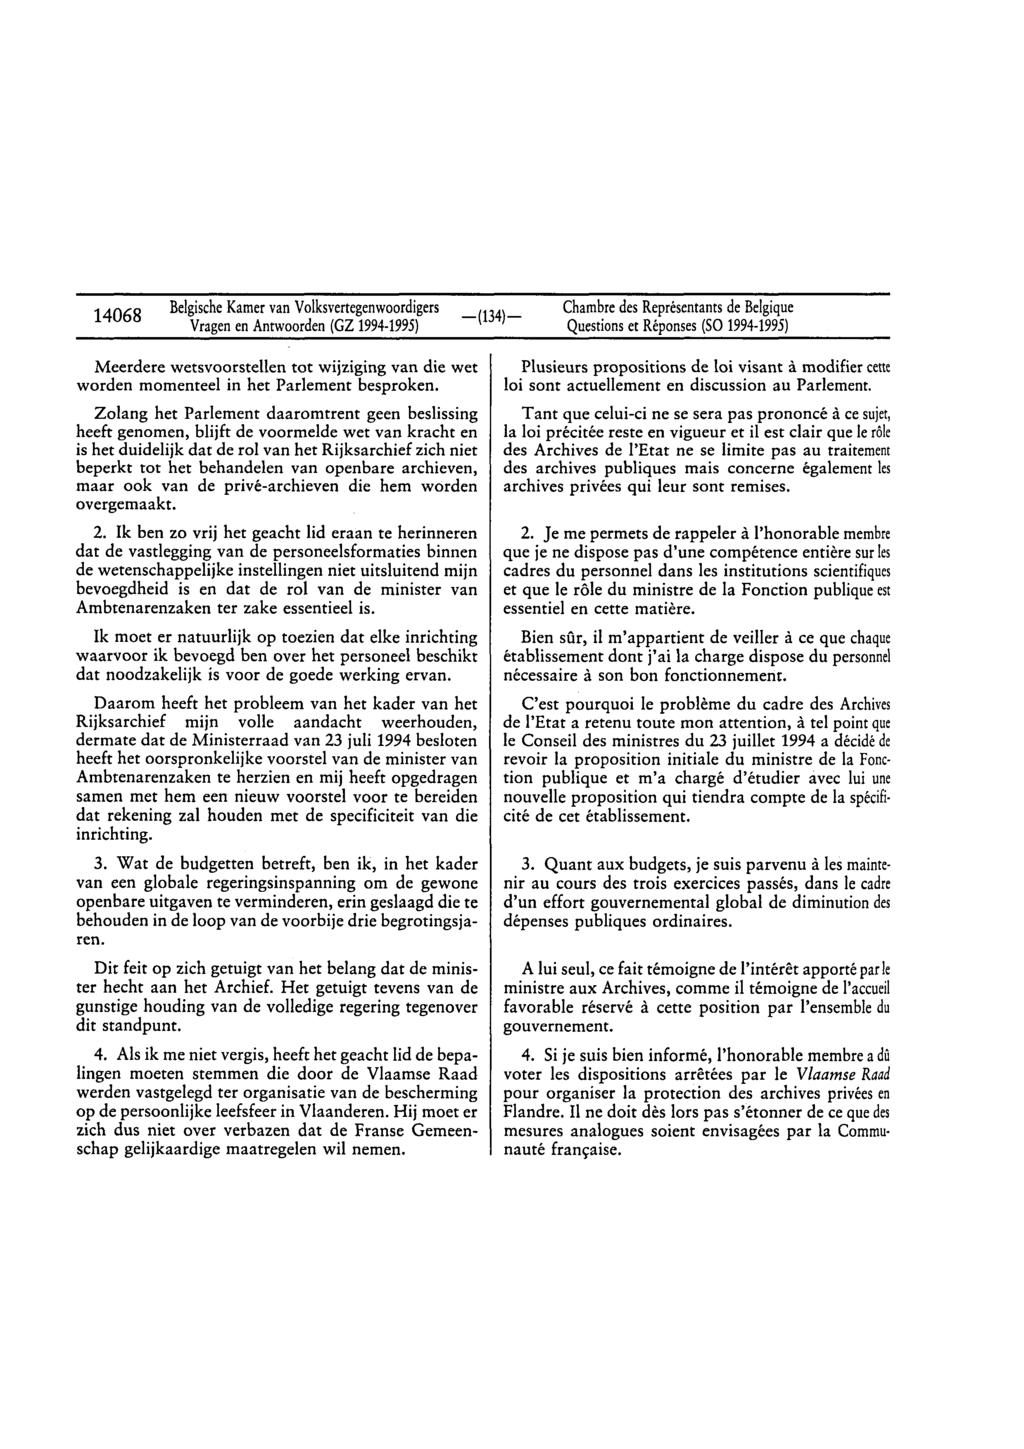 14068 BelgischeKamervan Volksvertegenwoordigers Vragenen Anrwoorden(GZ 1994-1995) Questionset Réponses(SO1994-1995) Meerdere wetsvoorstellen tot wijziging van die wet worden momenteel in het